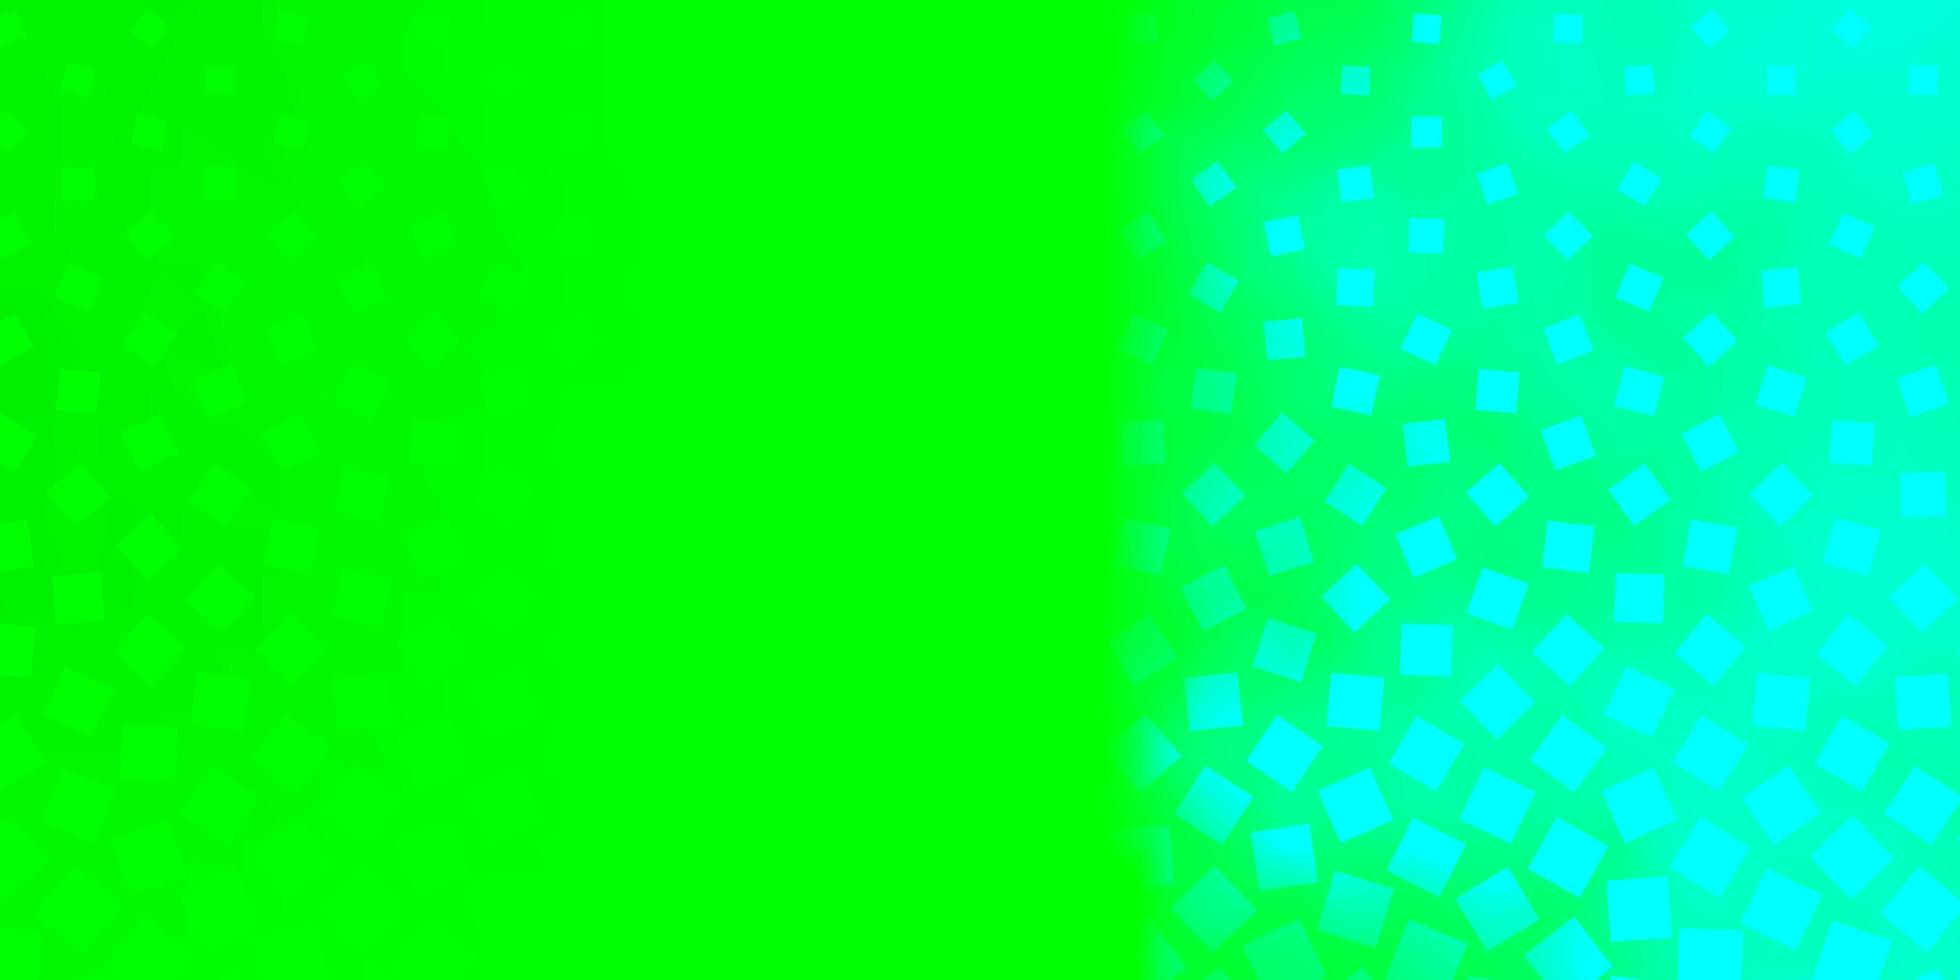 telón de fondo de vector verde claro con rectángulos.